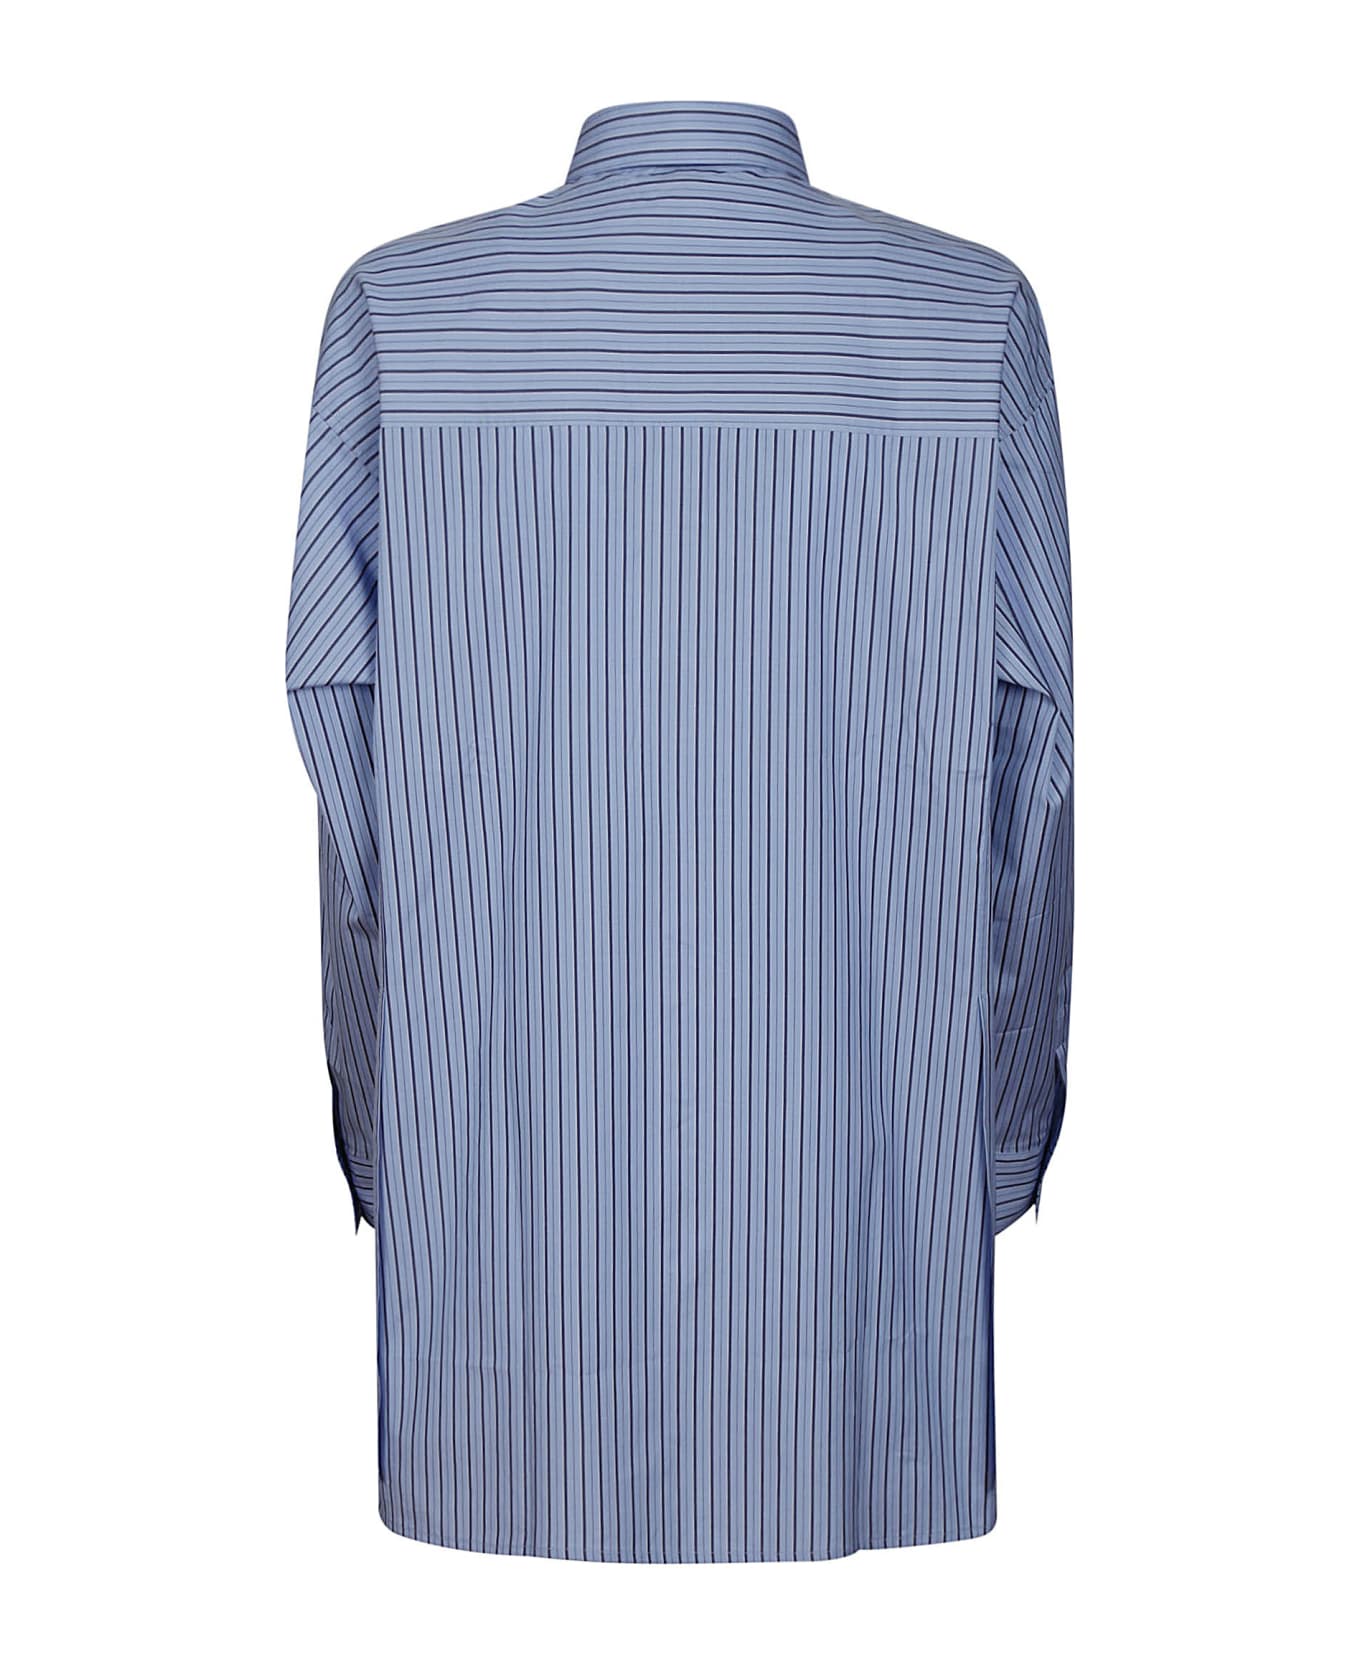 Aspesi Shirt 5455 - Riga Blu シャツ